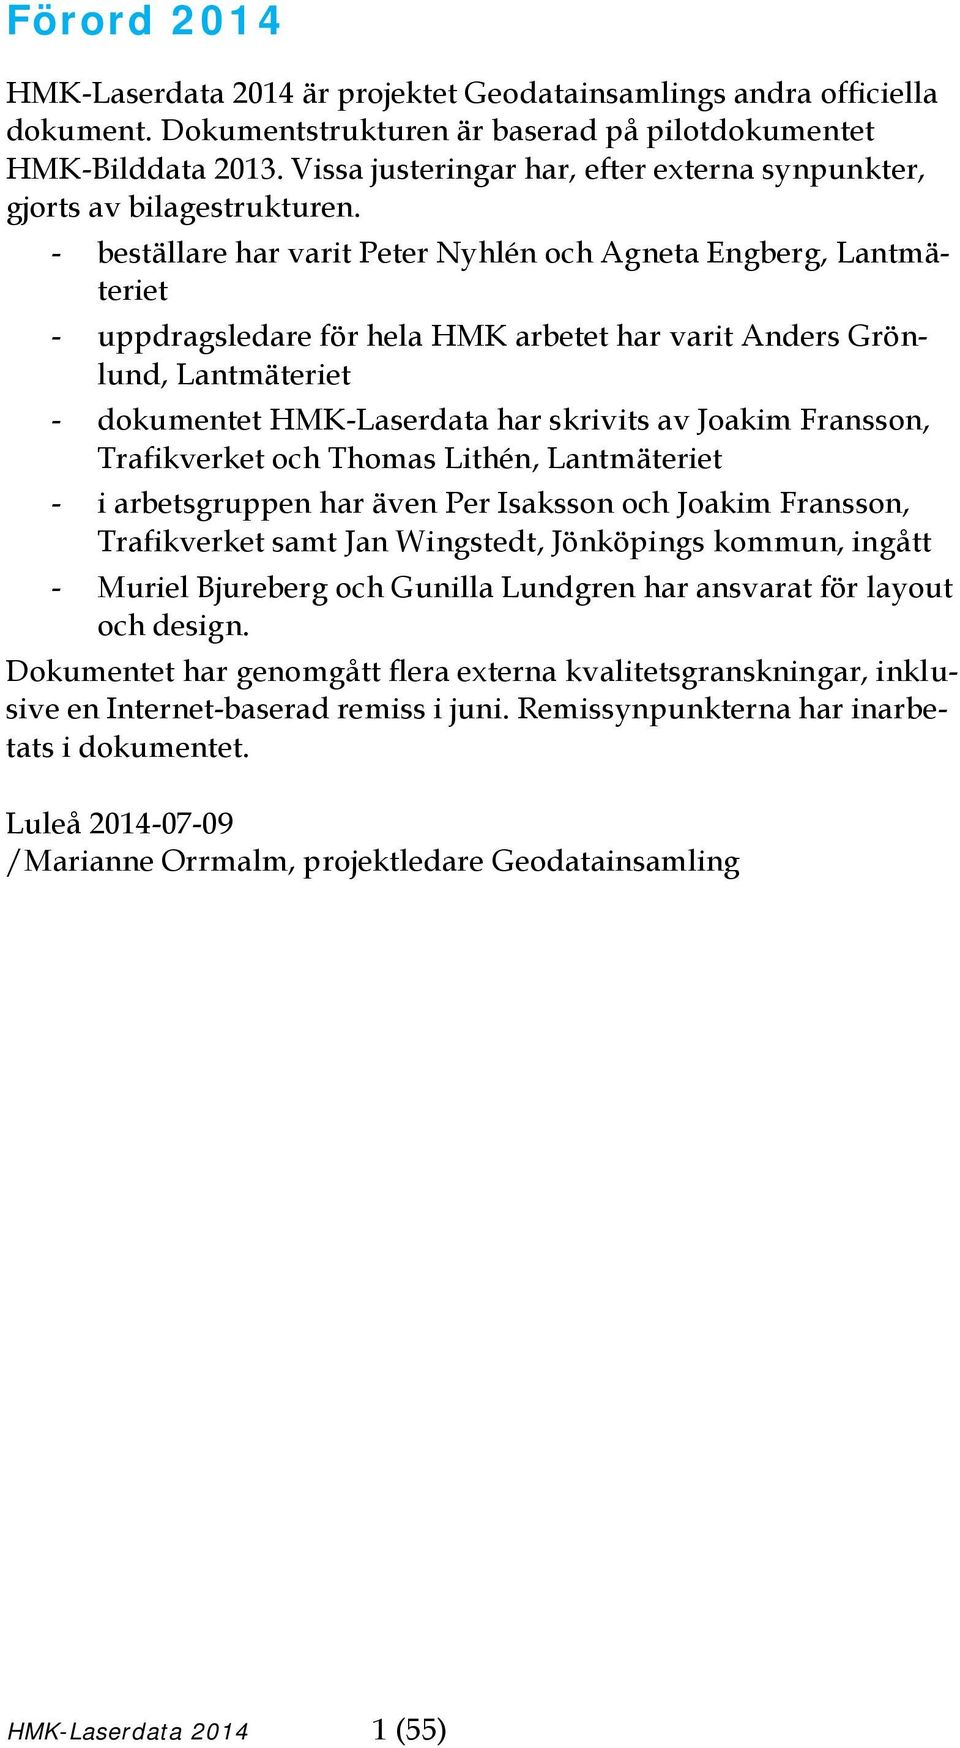 - beställare har varit Peter Nyhlén och Agneta Engberg, Lantmäteriet - uppdragsledare för hela HMK arbetet har varit Anders Grönlund, Lantmäteriet - dokumentet HMK-Laserdata har skrivits av Joakim